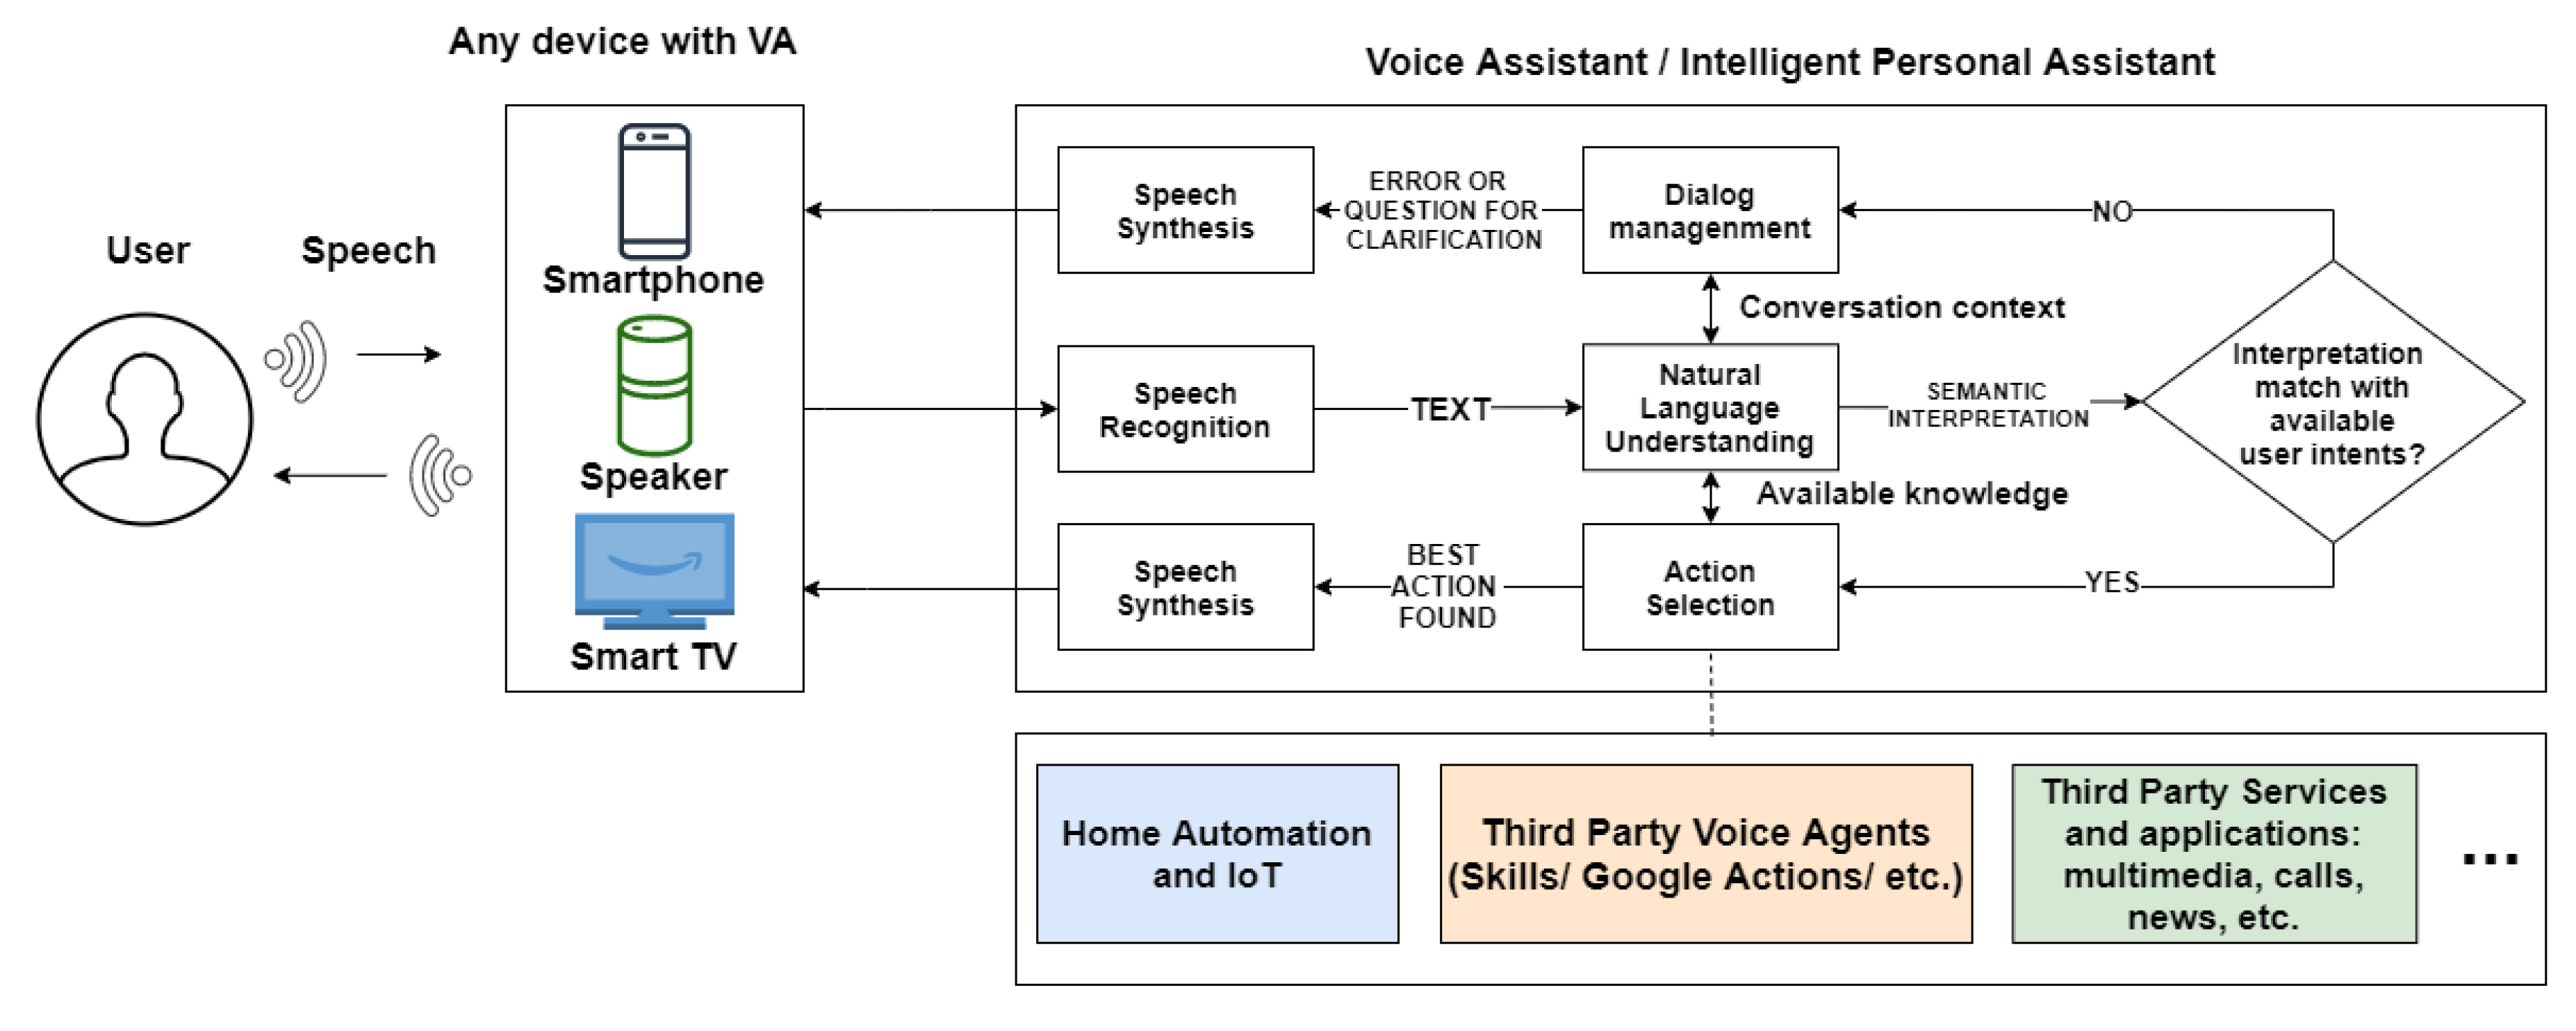 Report: Value exchange between radio and voice assistant platforms